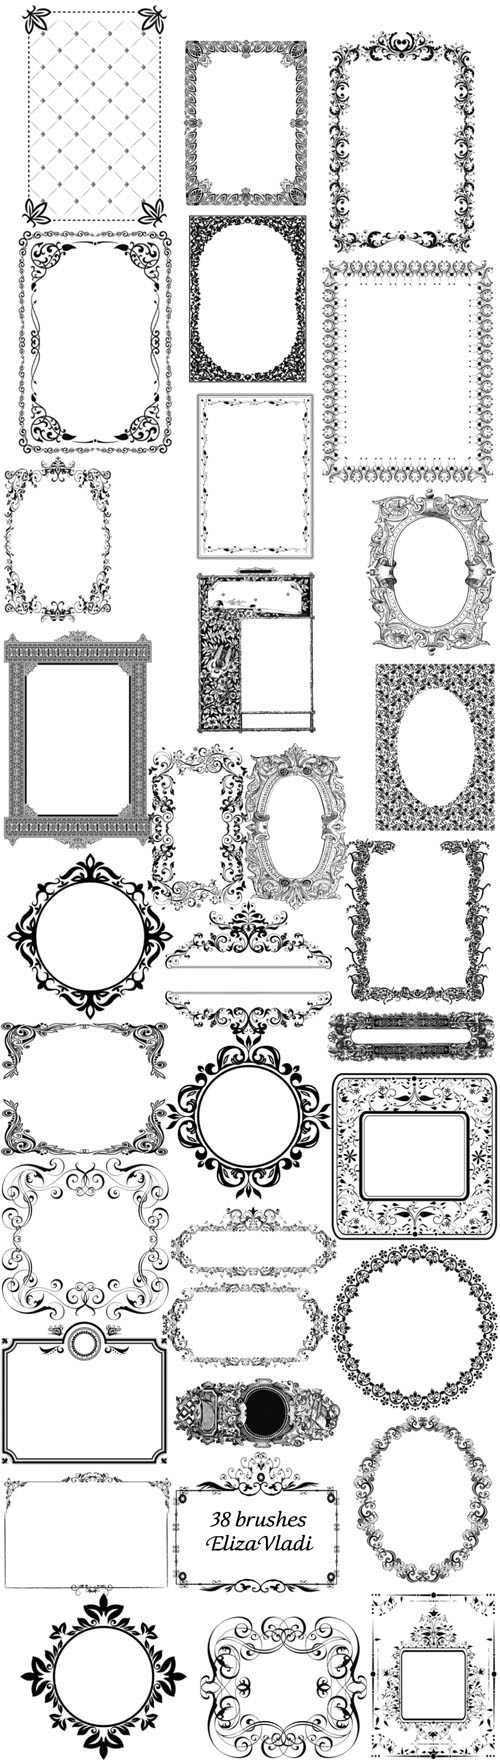 Royal Design frames Brushes